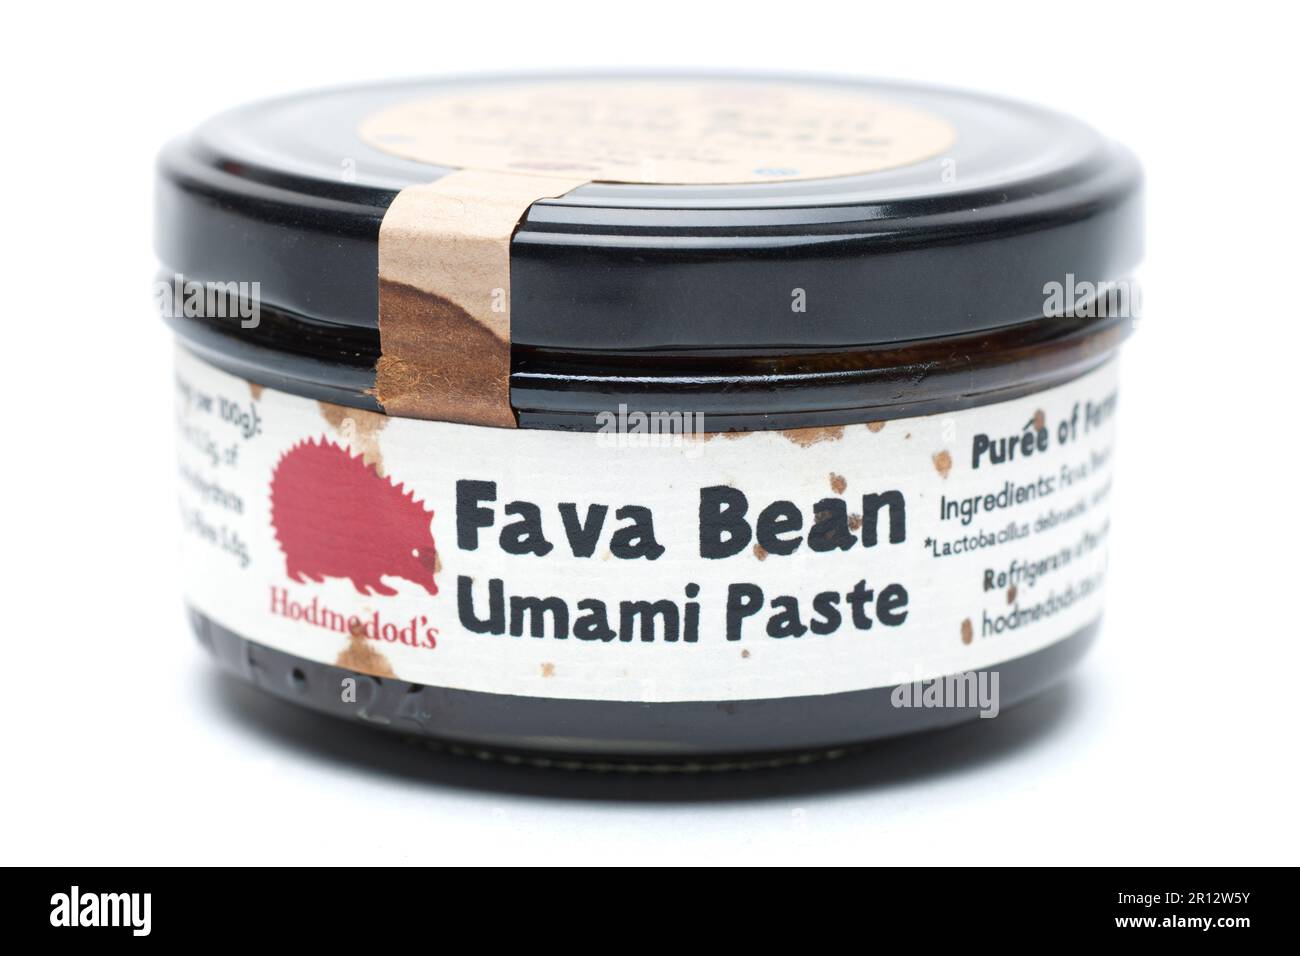 Hodmedod’s Fava Bean Umami Paste 175g vasetto Foto Stock